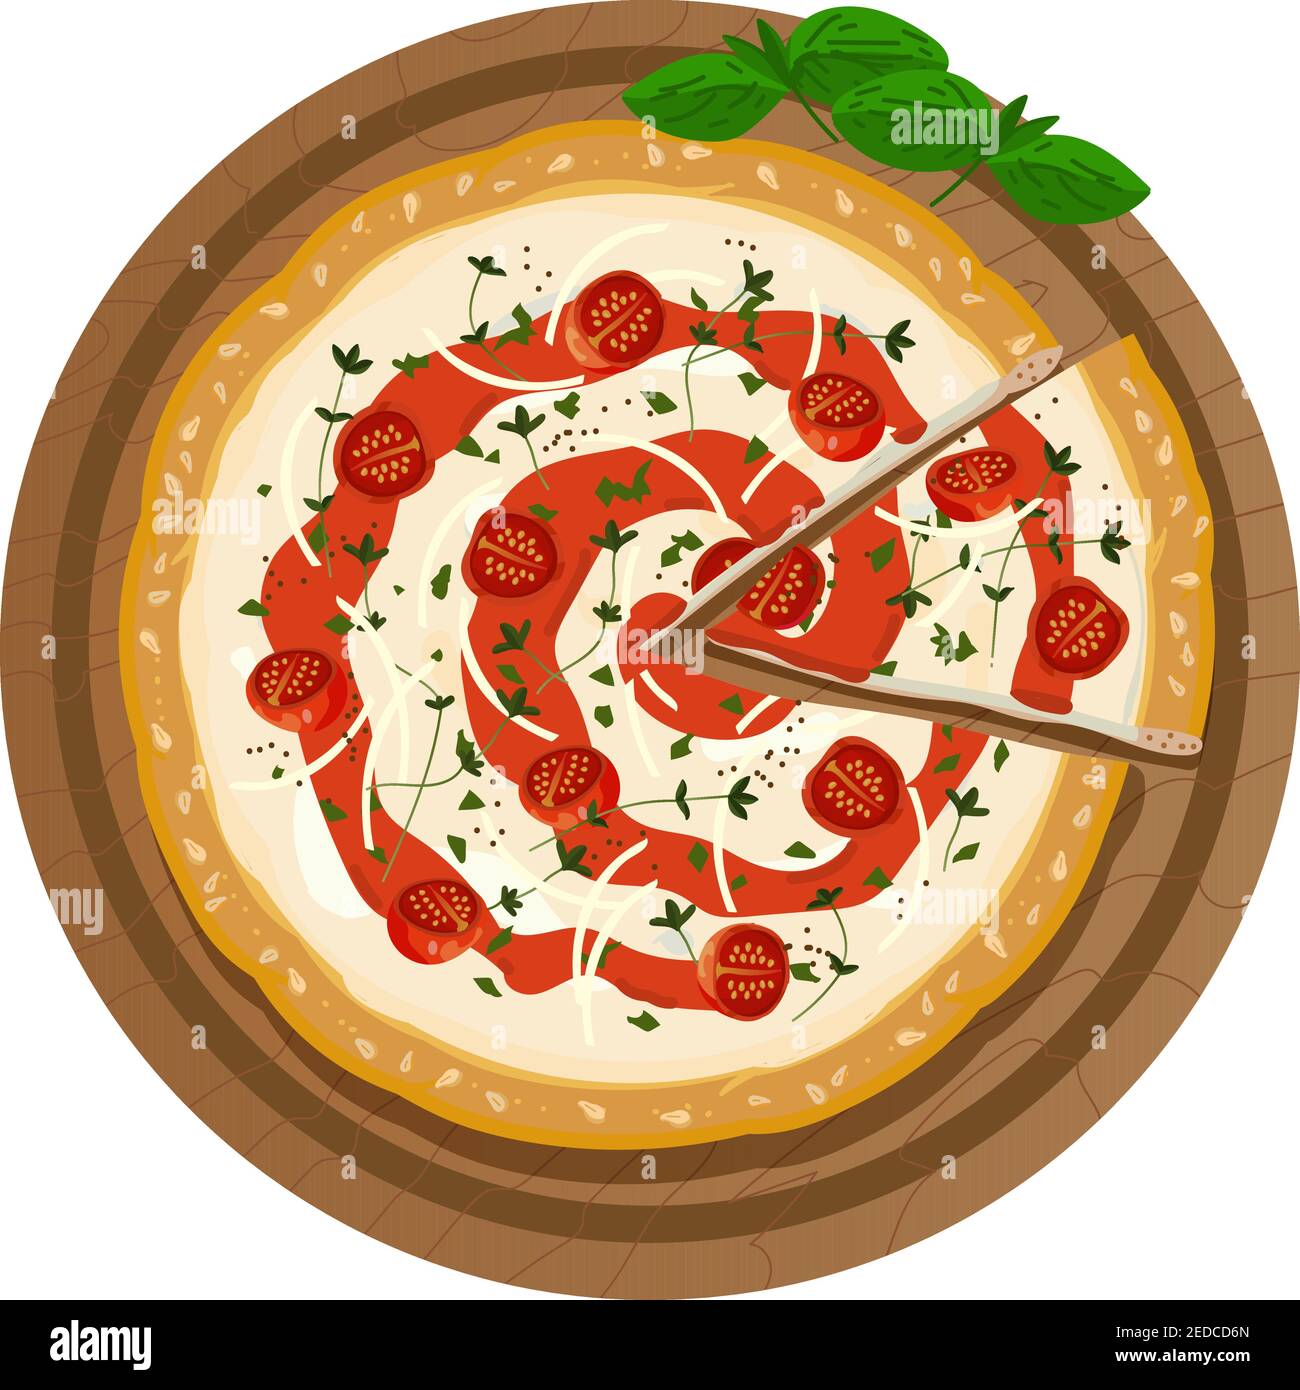 Pizza en un plato de madera con una rebanada cortada. Se sirve pizza fresca margarita con queso, tomates, salsa, albahaca y semillas de sésamo en una corteza crujiente. Mejor película Ilustración del Vector